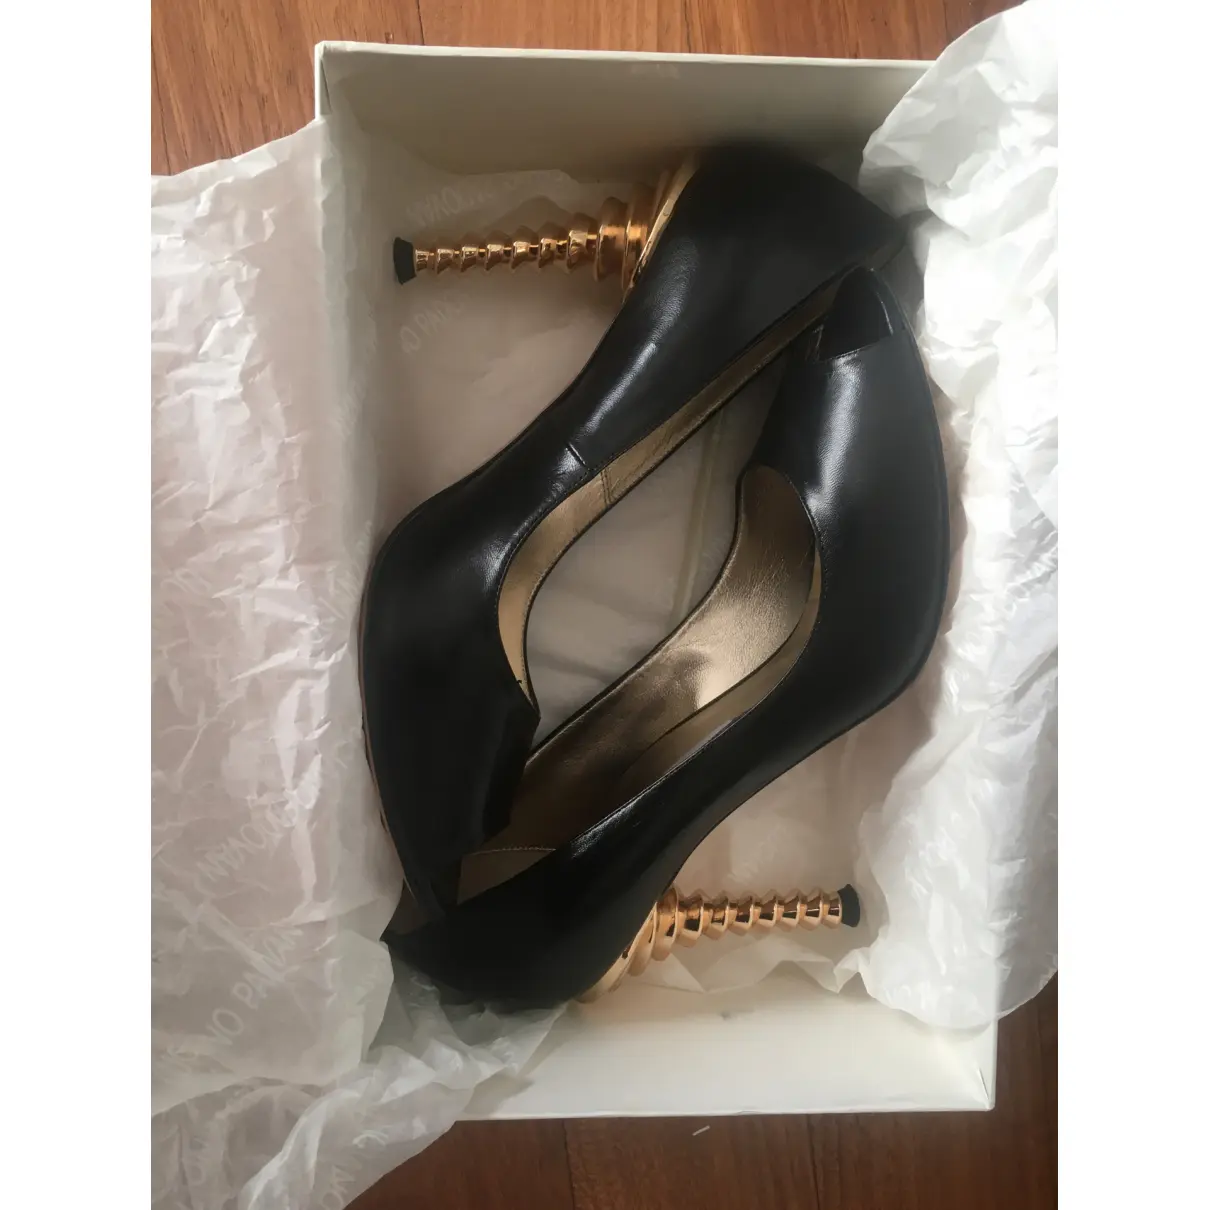 Buy Luciano Padovan Leather heels online